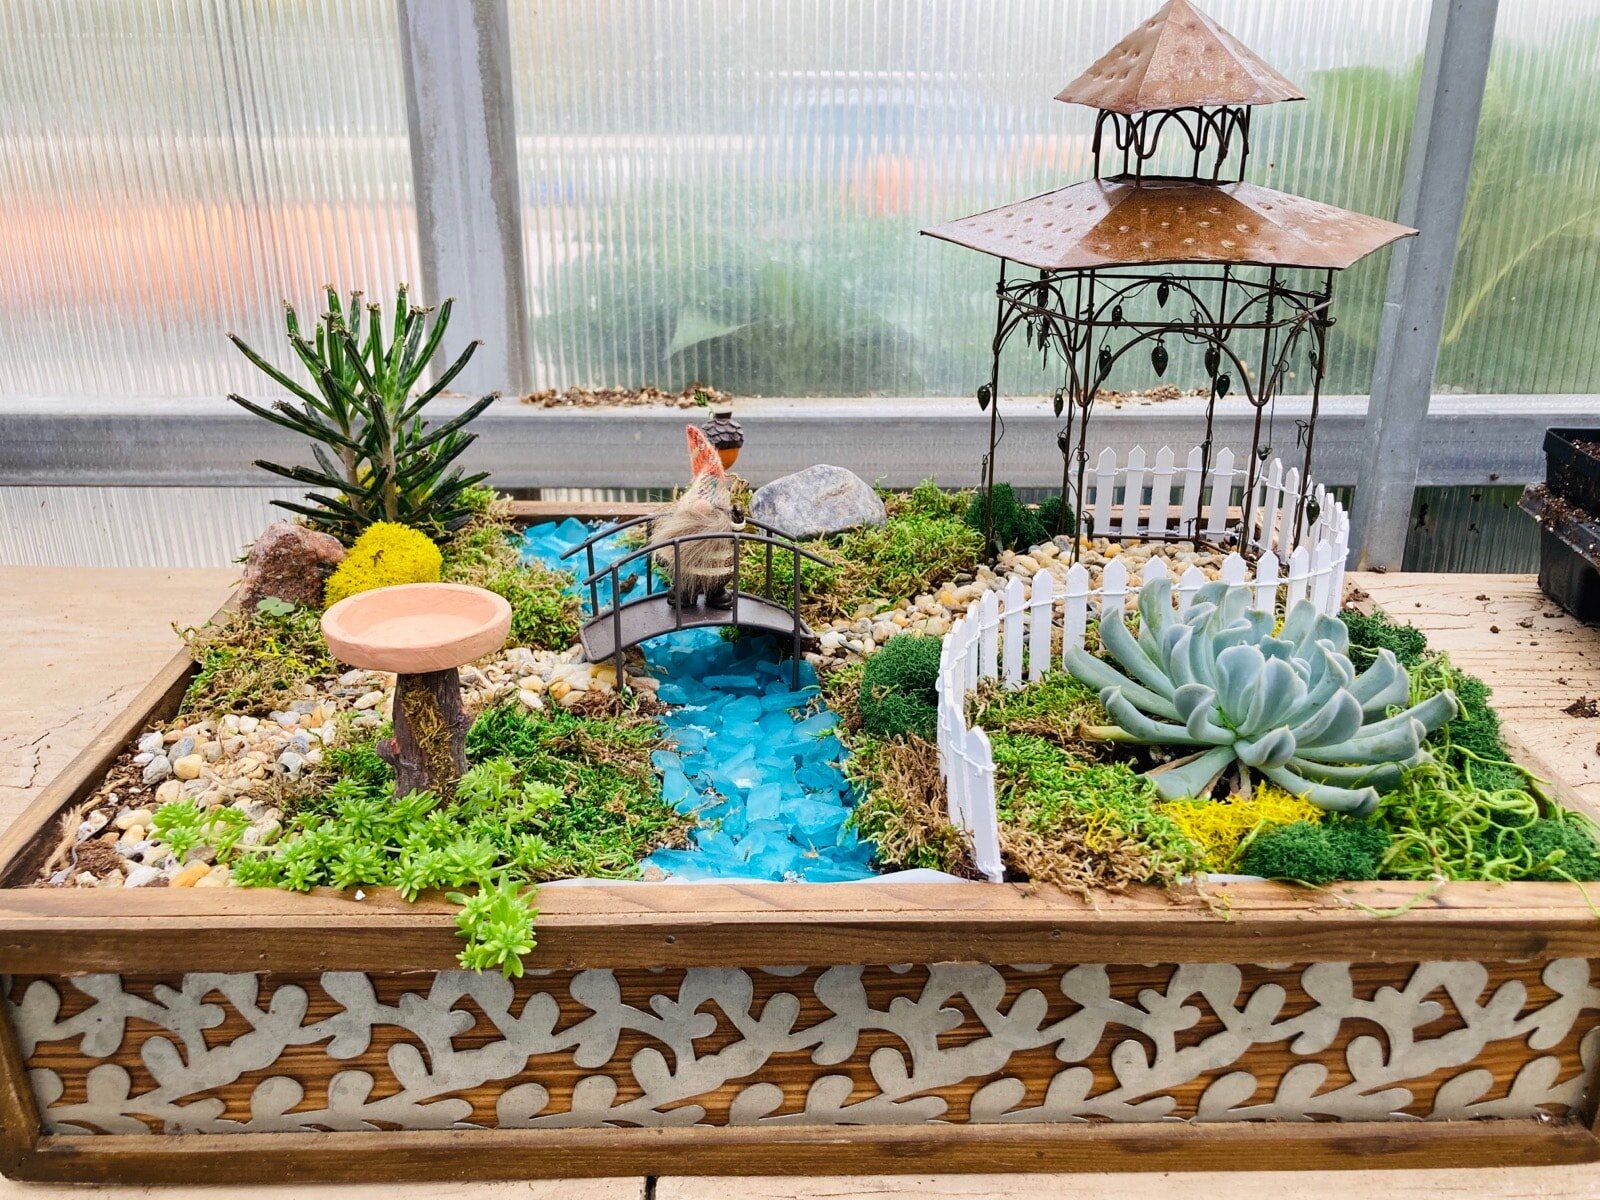 Ploeg Verlengen hengel Miniature Gardening — Ivy Trails Gift & Garden